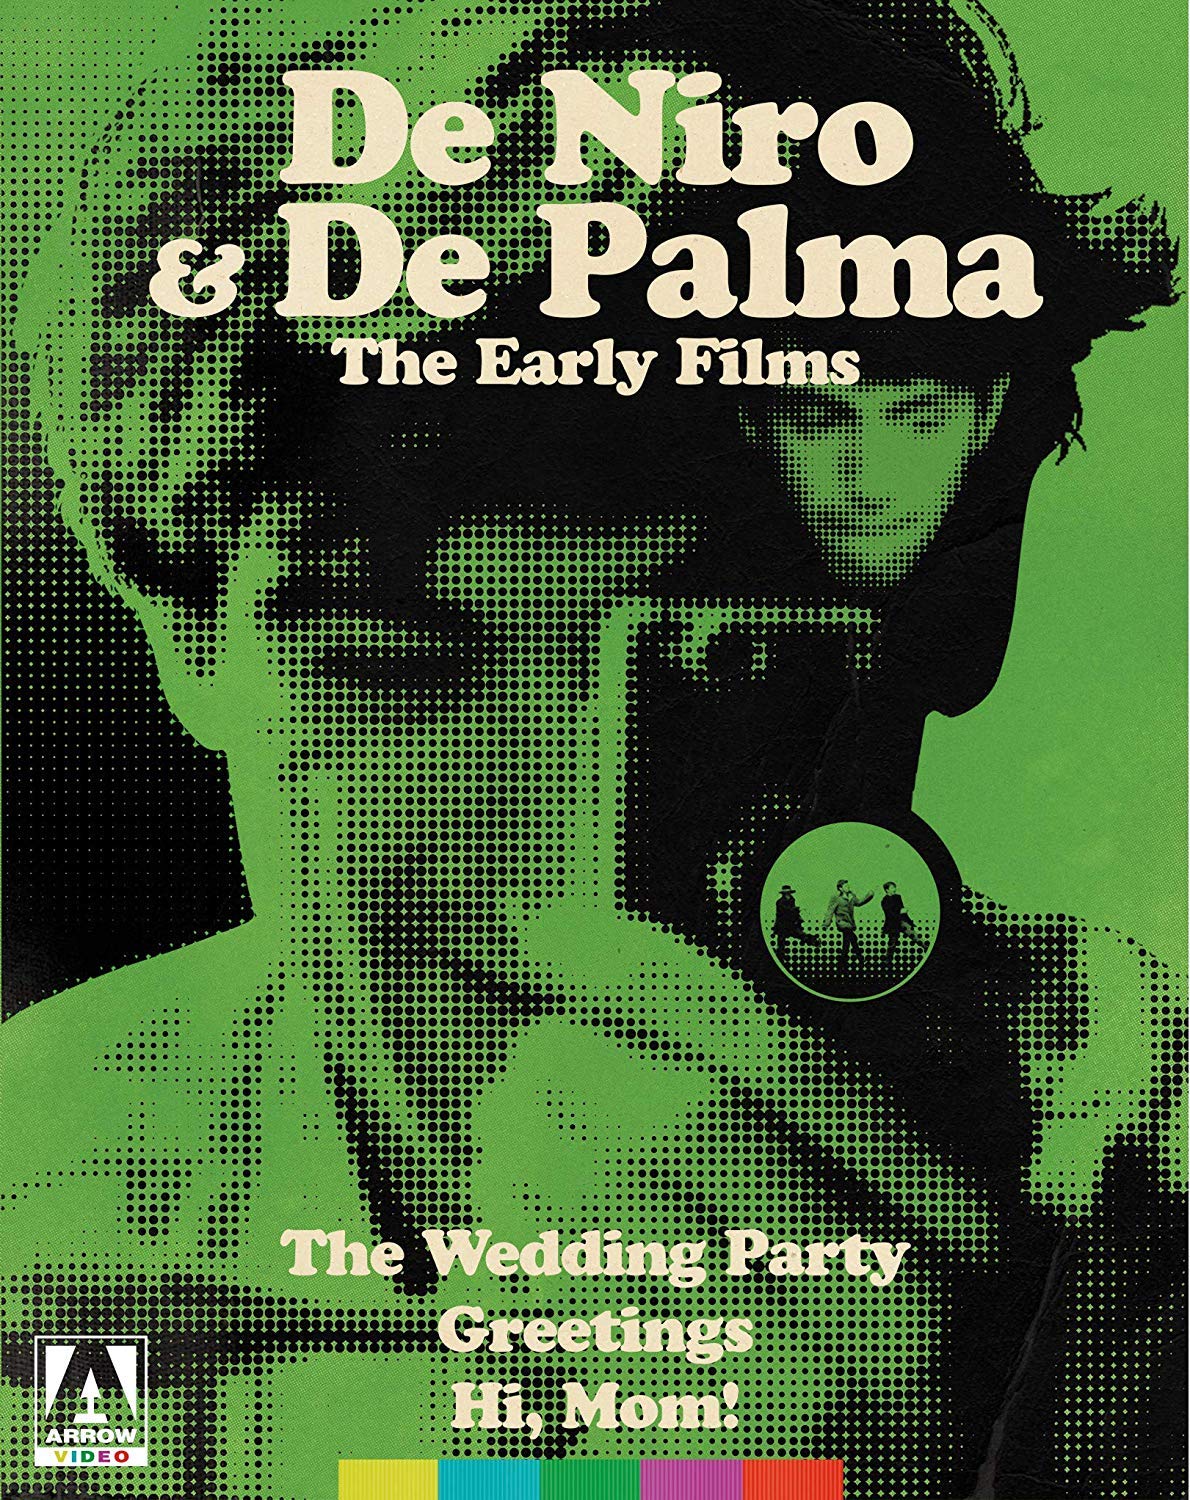 3 takeaways from De Palma & De Niro: The Early Films